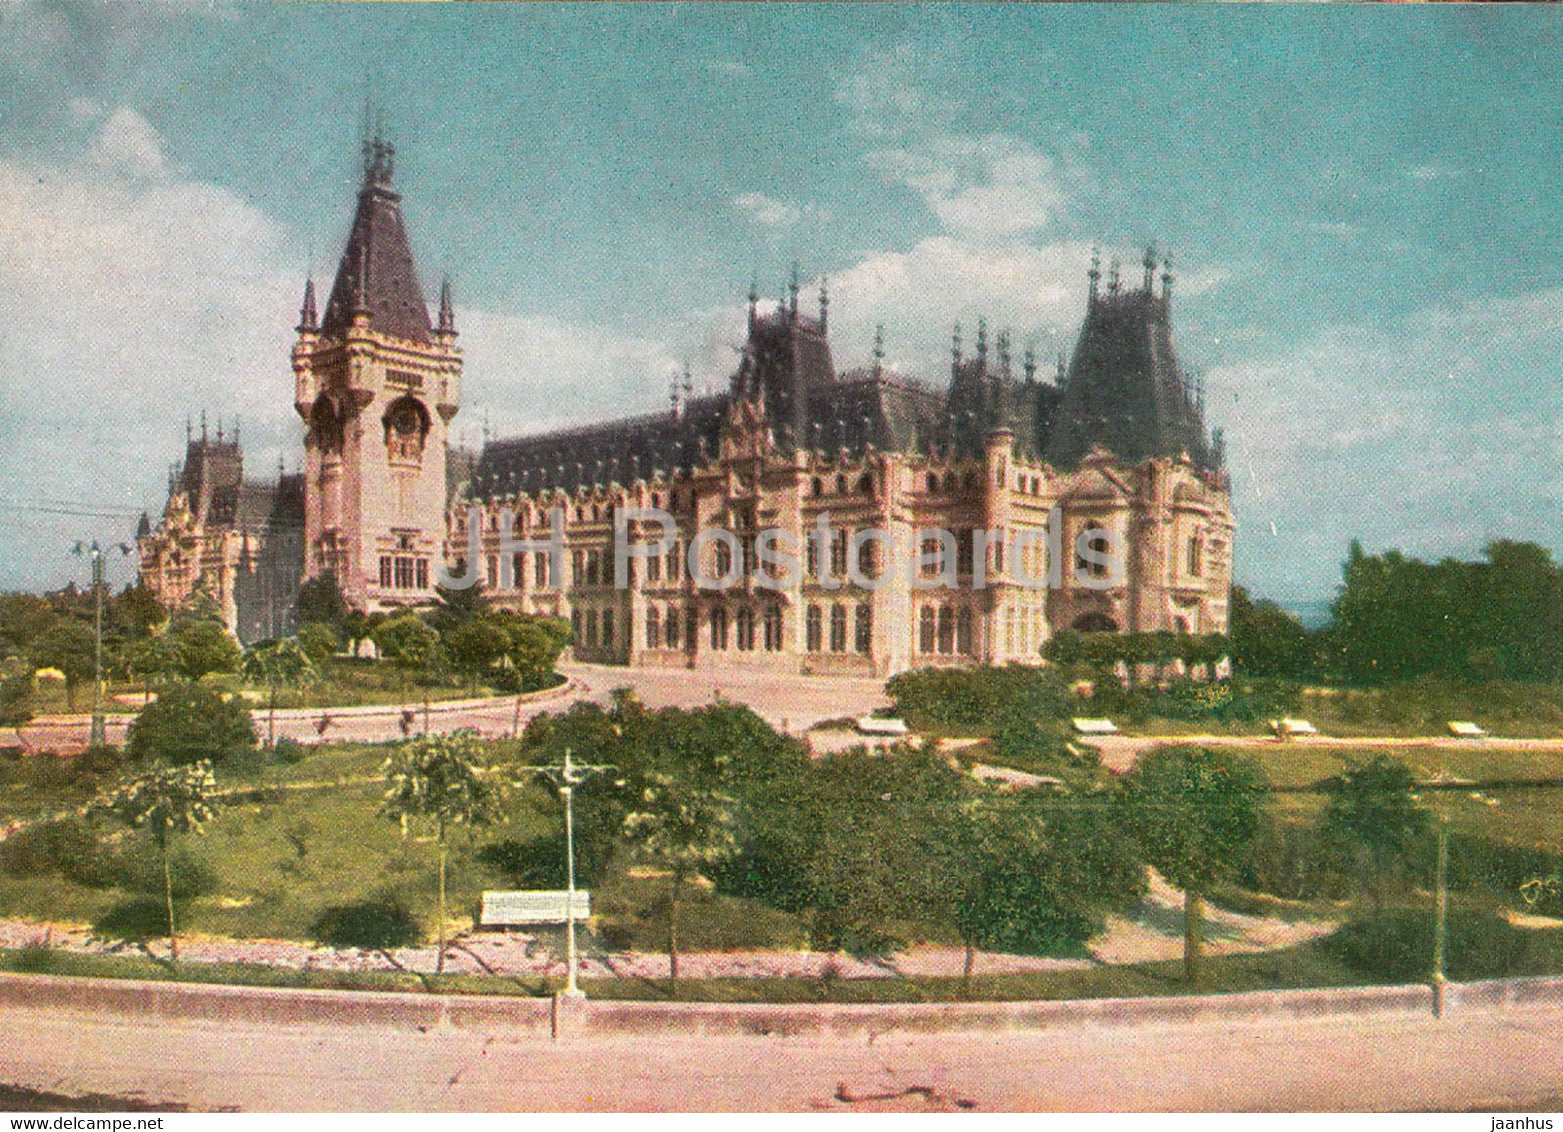 Iasi - Culture Palace - 1965 - Romania - unused - JH Postcards